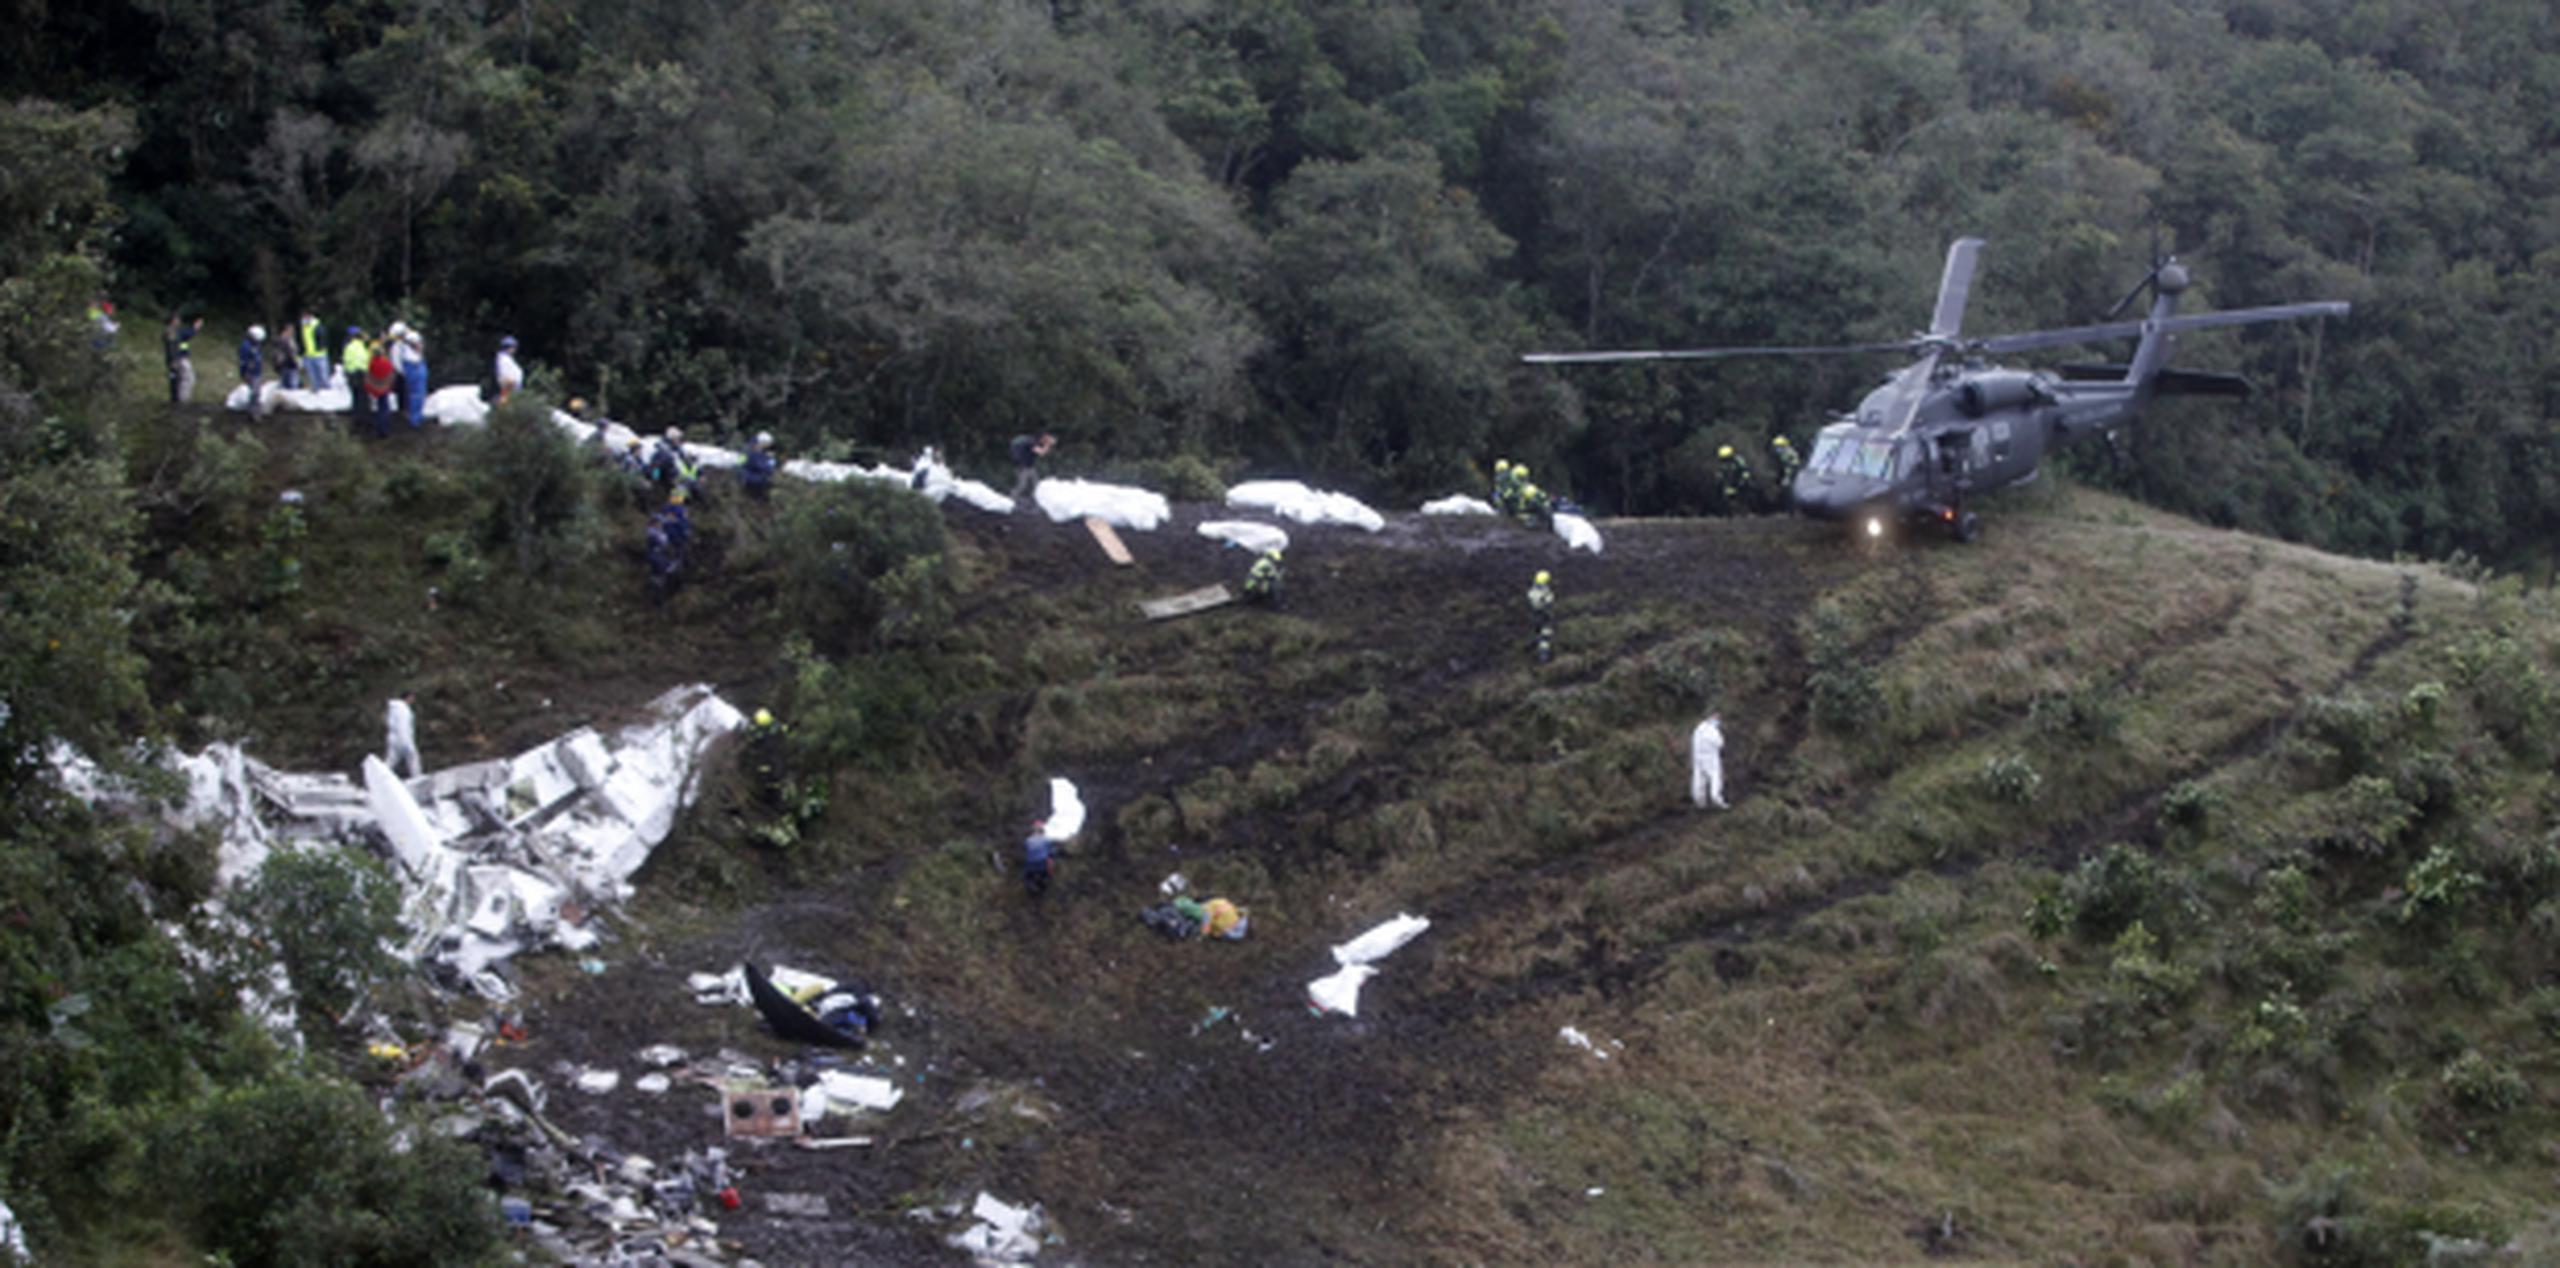 La aerolínea LaMia fue suspendida por el gobierno boliviano. (GDA / Joaquín Guillermo Ossa Riaño)